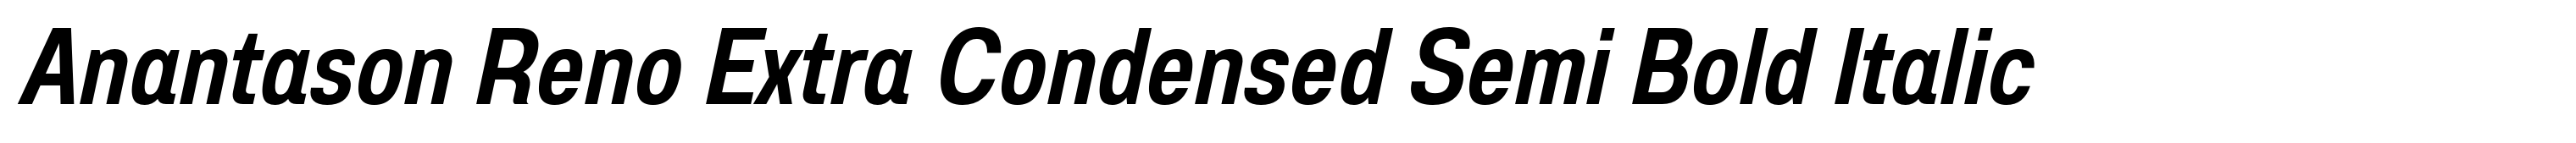 Anantason Reno Extra Condensed Semi Bold Italic